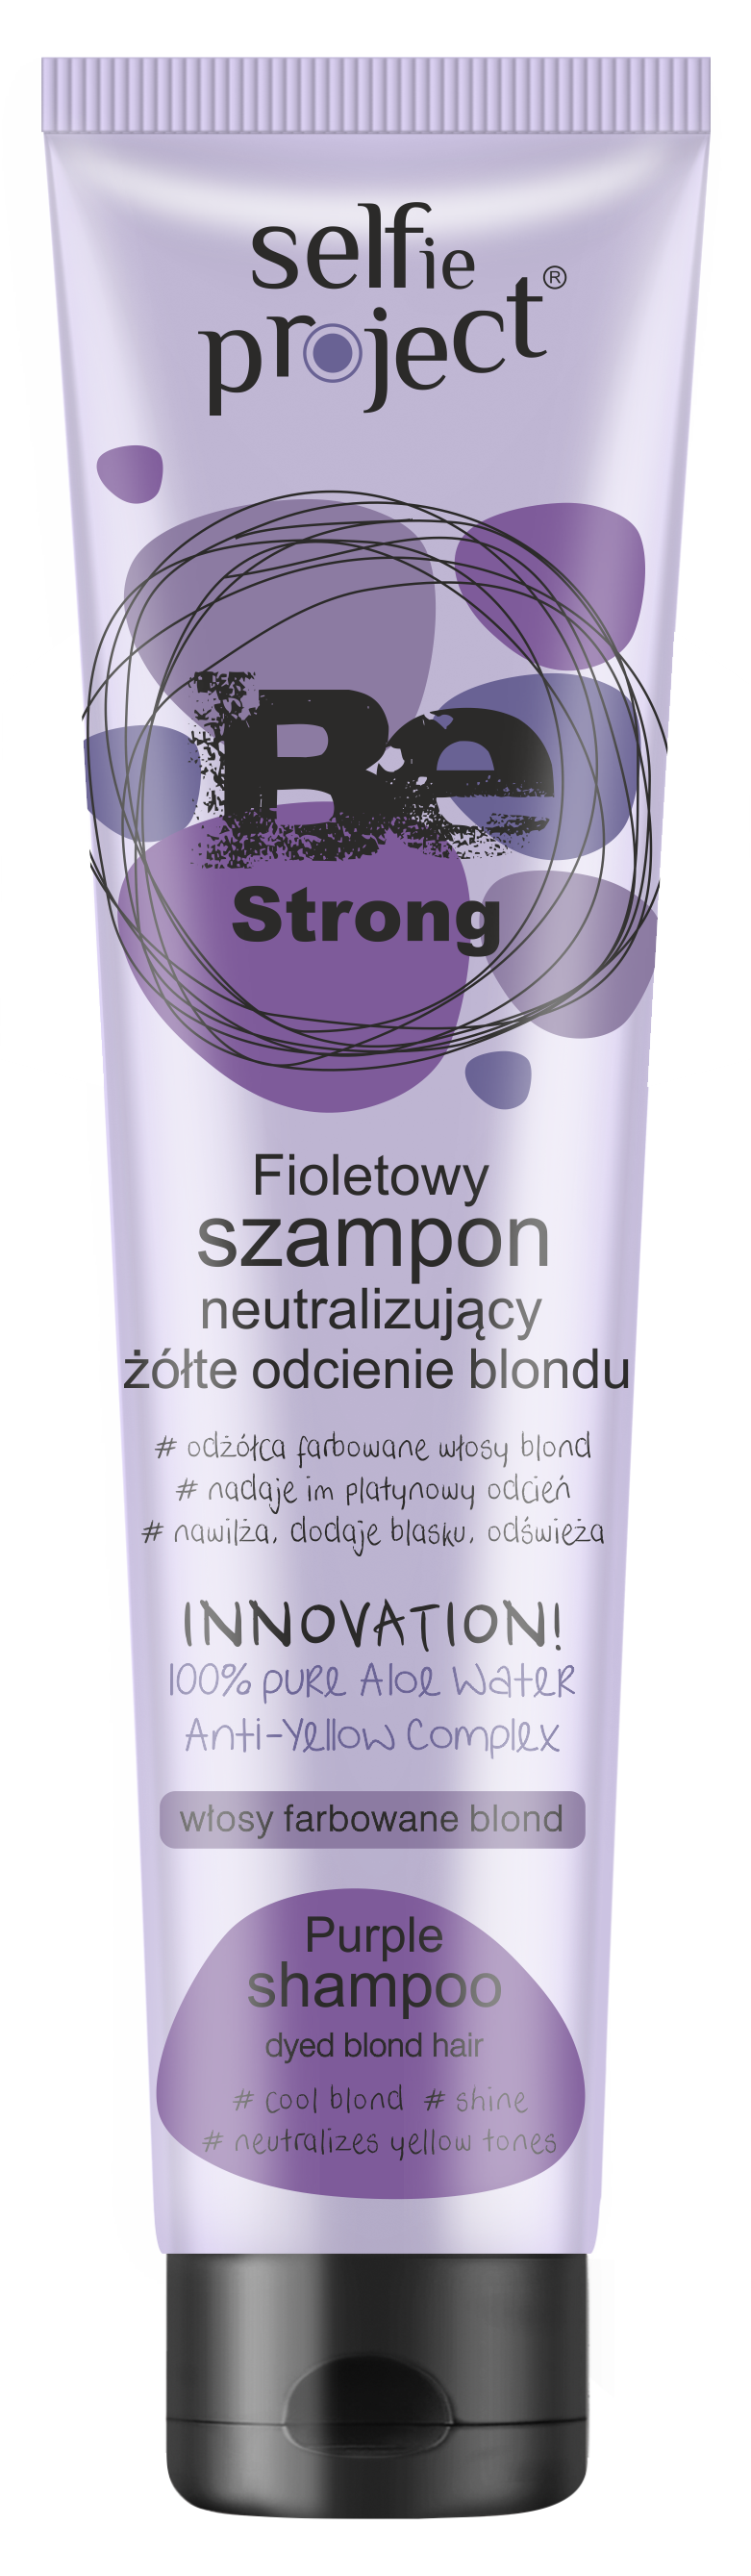 fioletowy szampon platynowy blond